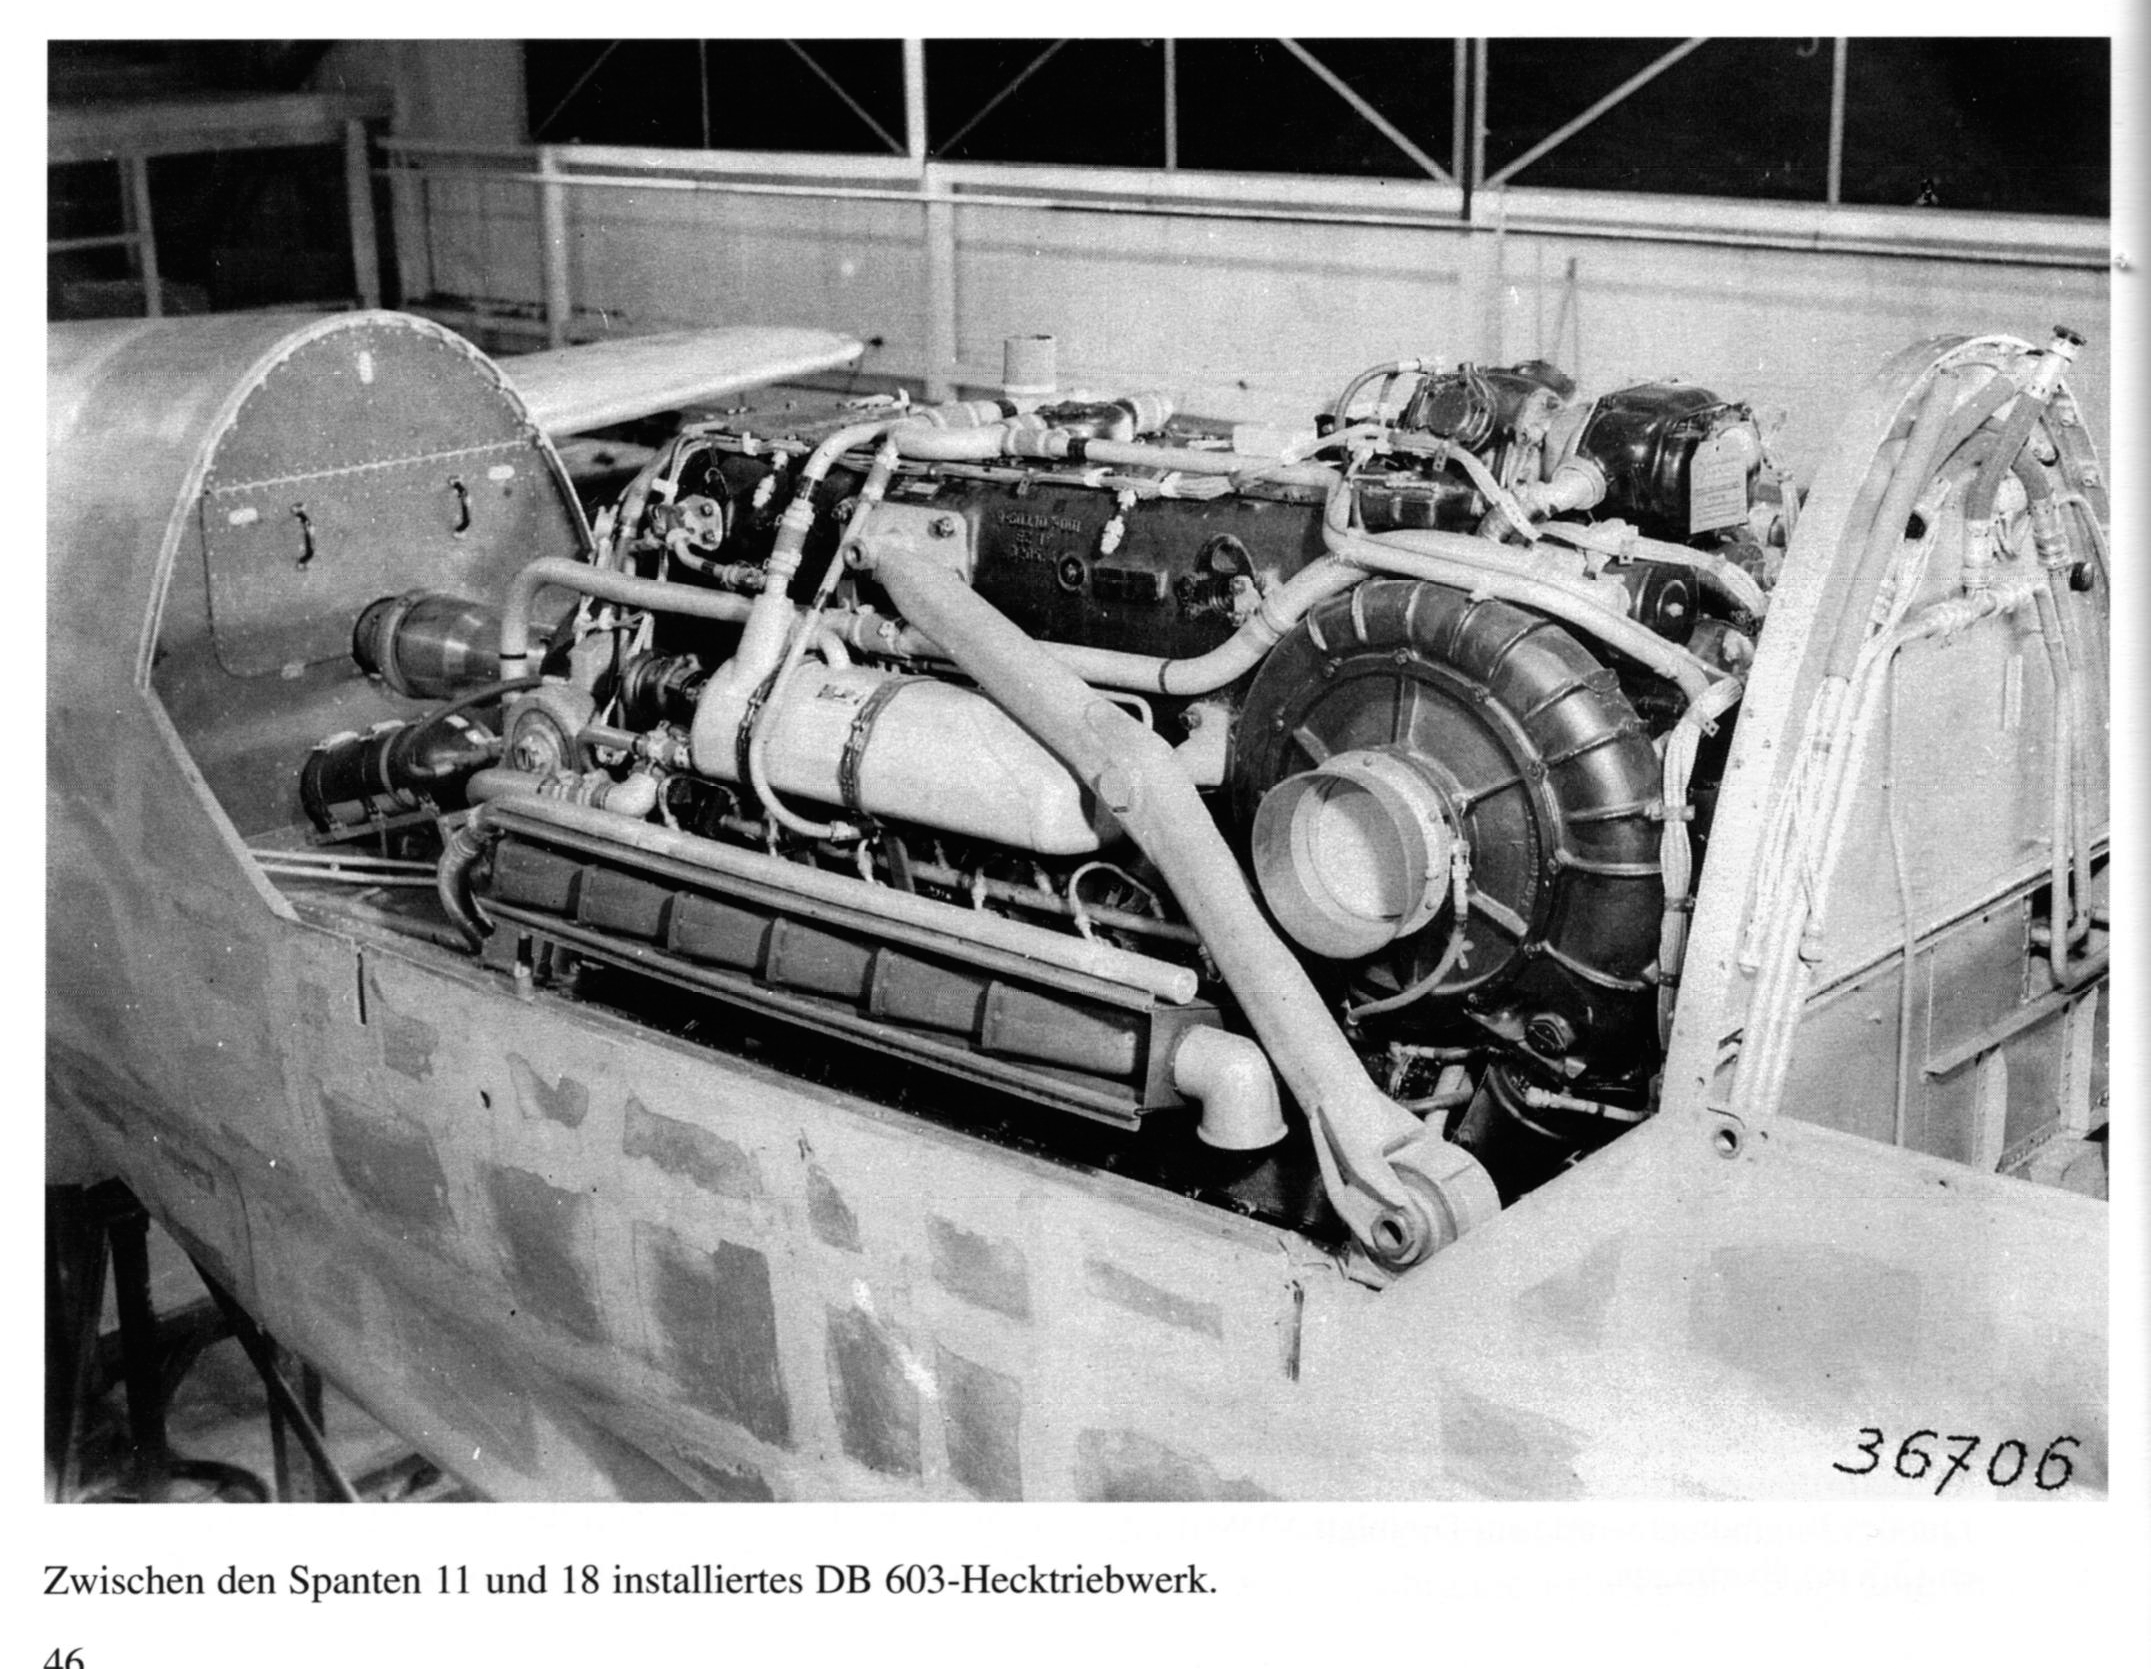 Do-335 rear engine in unpainted plane.jpg